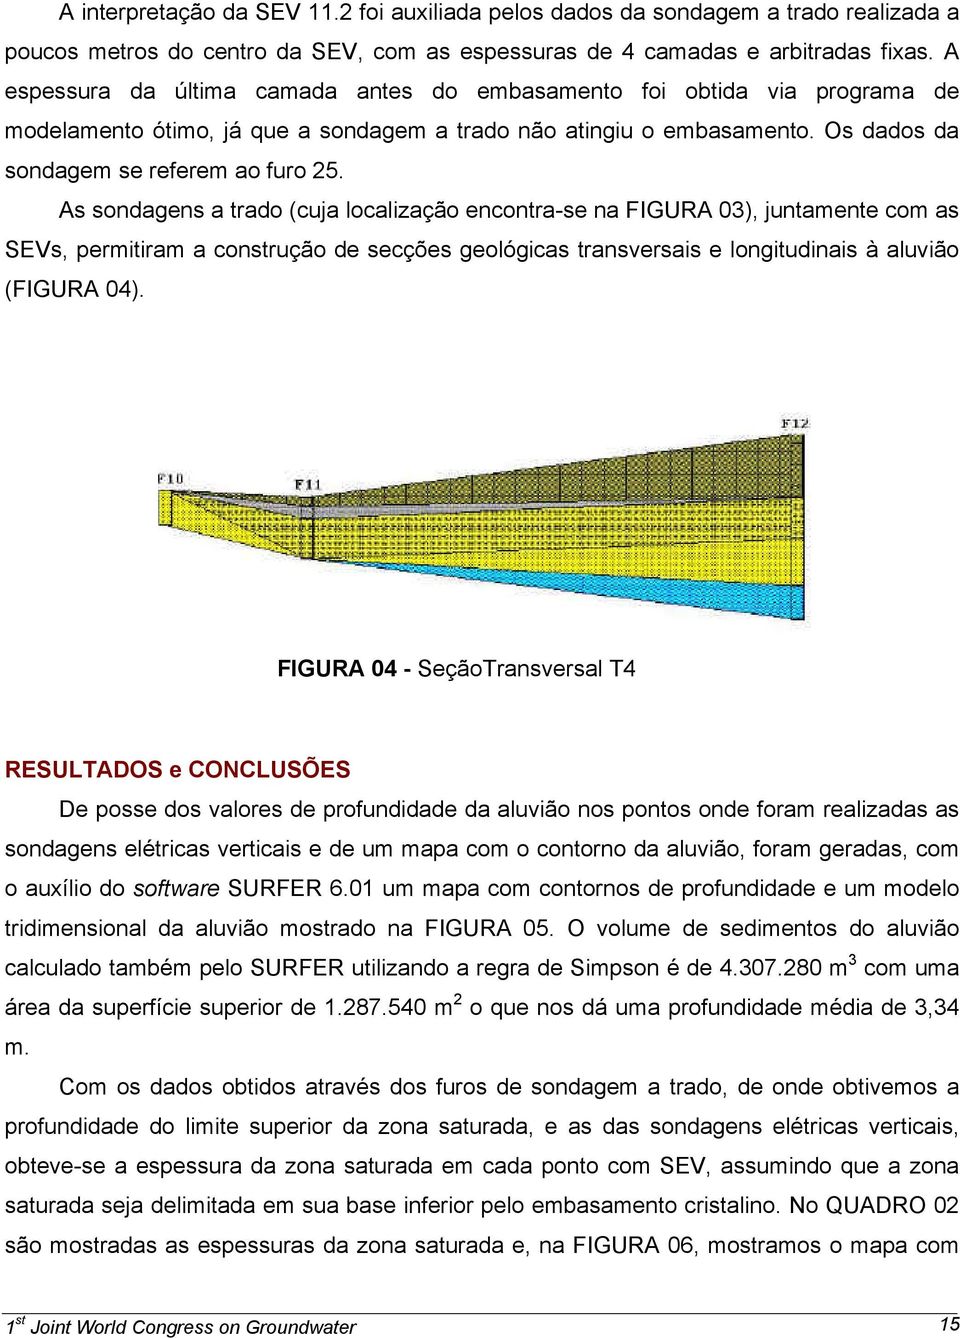 As sondagens a trado (cuja localização encontra-se na FIGURA 03), juntamente com as SEVs, permitiram a construção de secções geológicas transversais e longitudinais à aluvião (FIGURA 04).